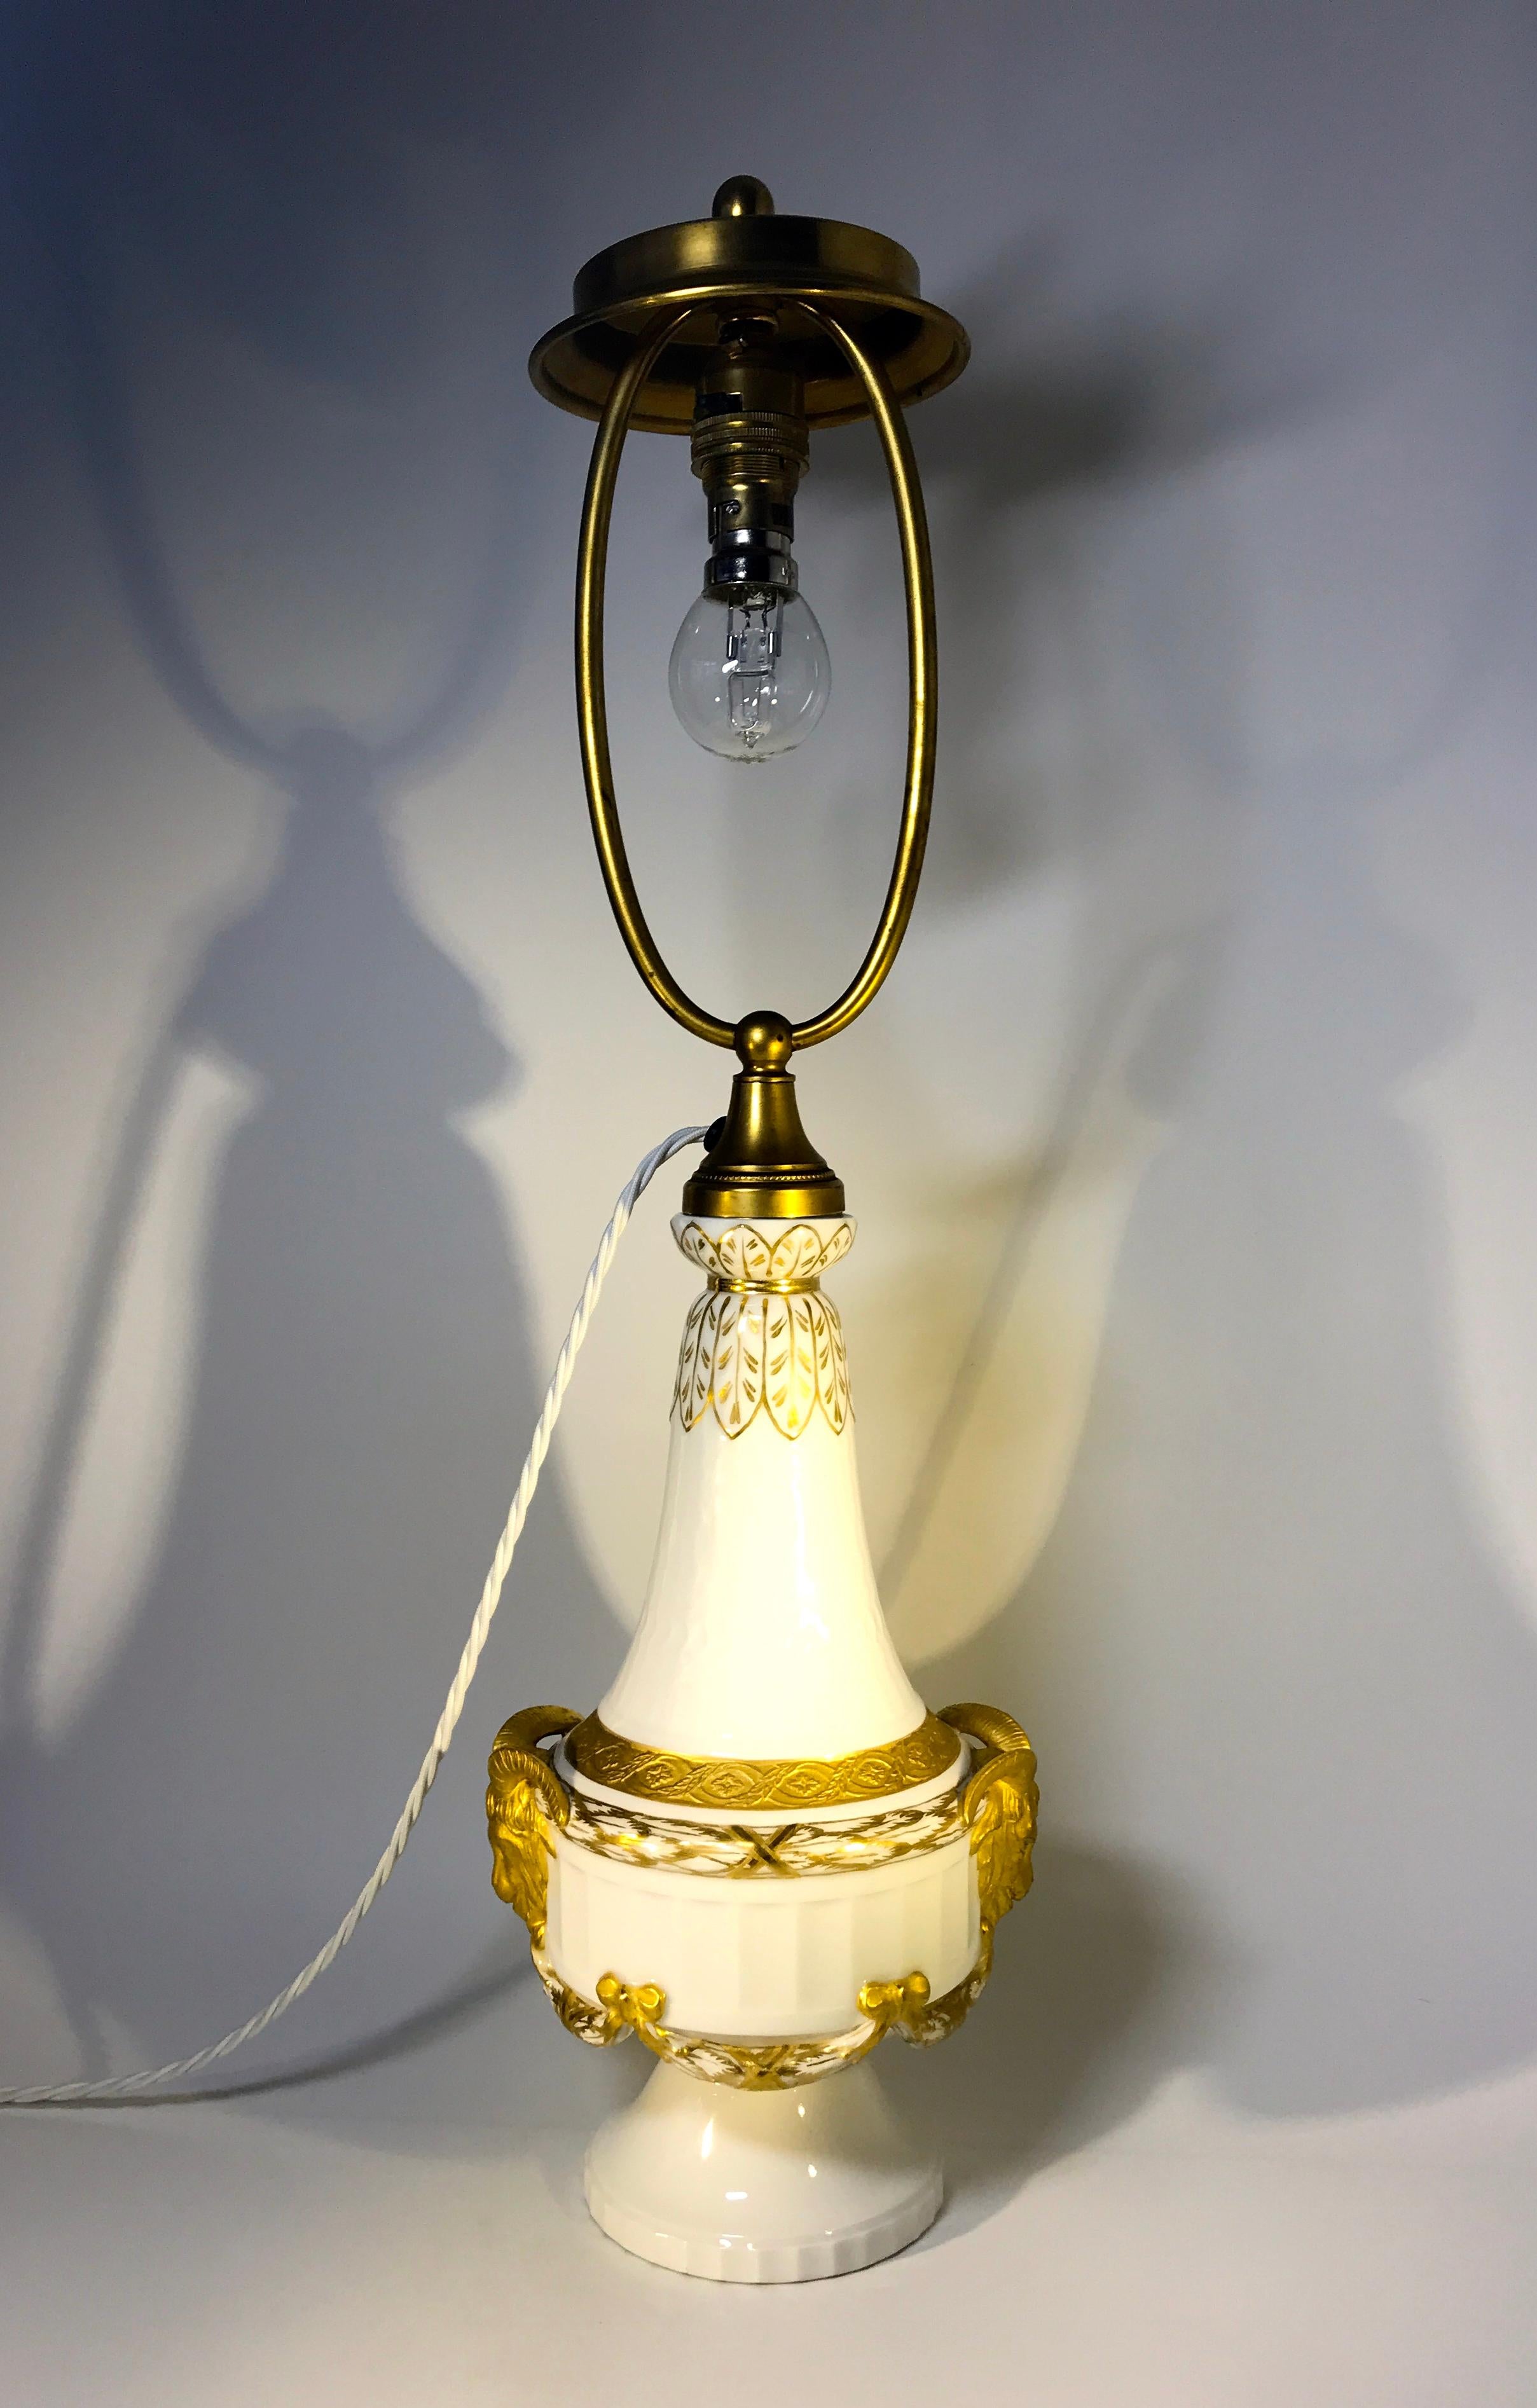 Fabuleuse lampe de table en porcelaine blanche de style Royal Copenhagen XVI, datée entre 1889-1922, en superbe état.
Somptueusement décorée de guirlandes, de têtes de béliers et d'arcs dorés.
Daté de 1889-1922
Signé et numéroté 11537
Mesures :